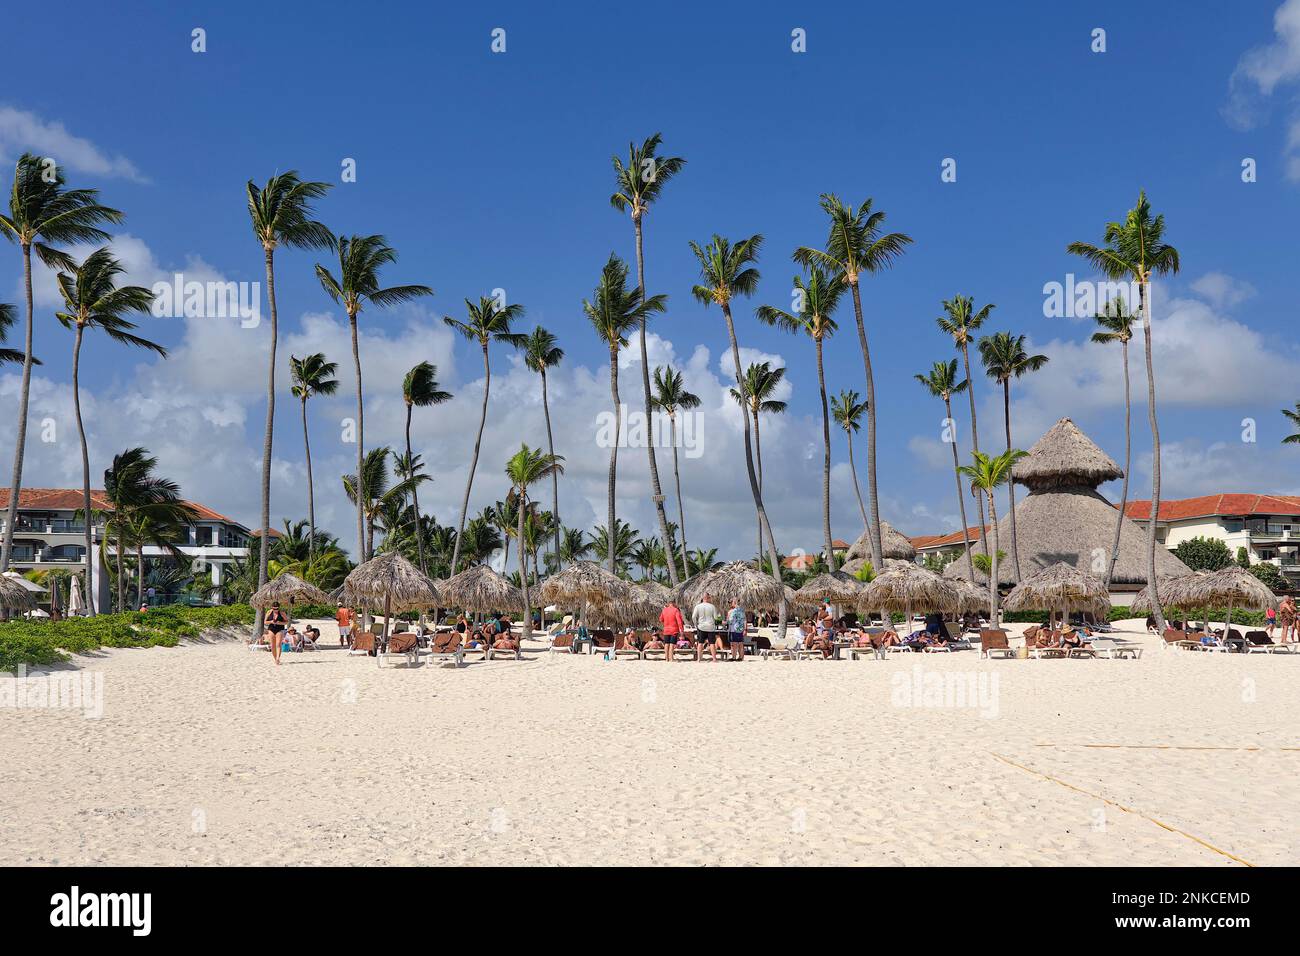 Bar à feuilles de palmier et parasols, plage de Los Corales Bavaro, Punta Cana, République dominicaine, Caraïbes, Amérique centrale Banque D'Images